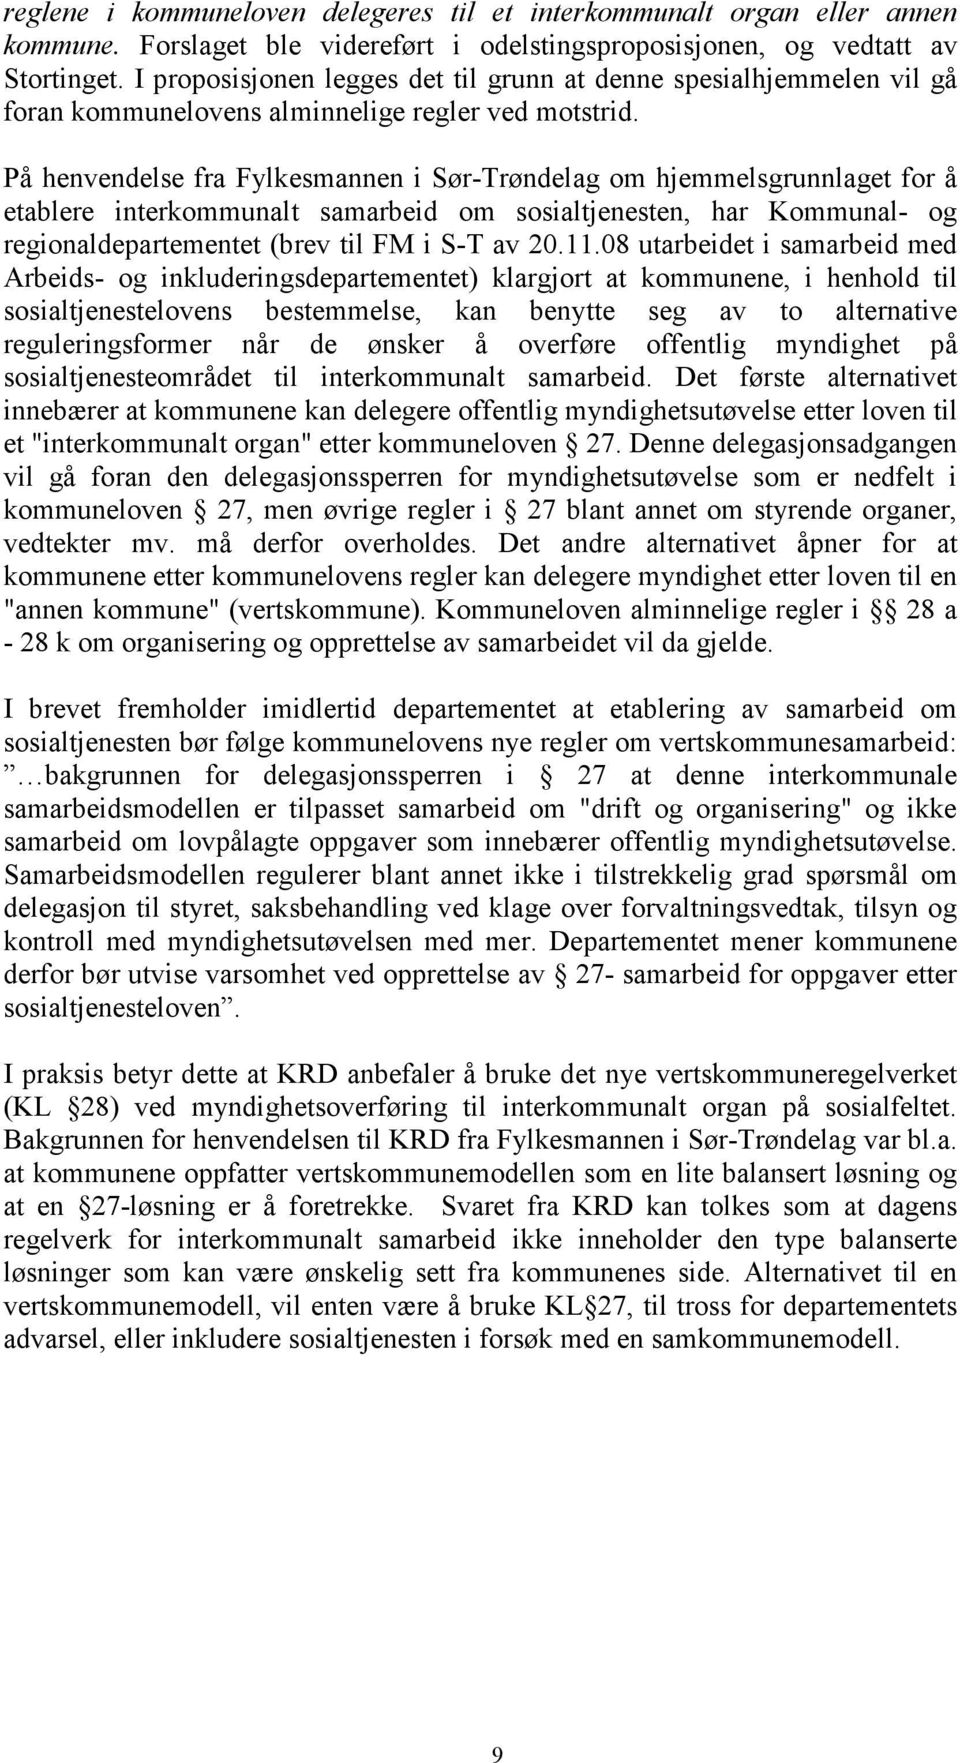 På henvendelse fra Fylkesmannen i Sør-Trøndelag om hjemmelsgrunnlaget for å etablere interkommunalt samarbeid om sosialtjenesten, har Kommunal- og regionaldepartementet (brev til FM i S-T av 20.11.